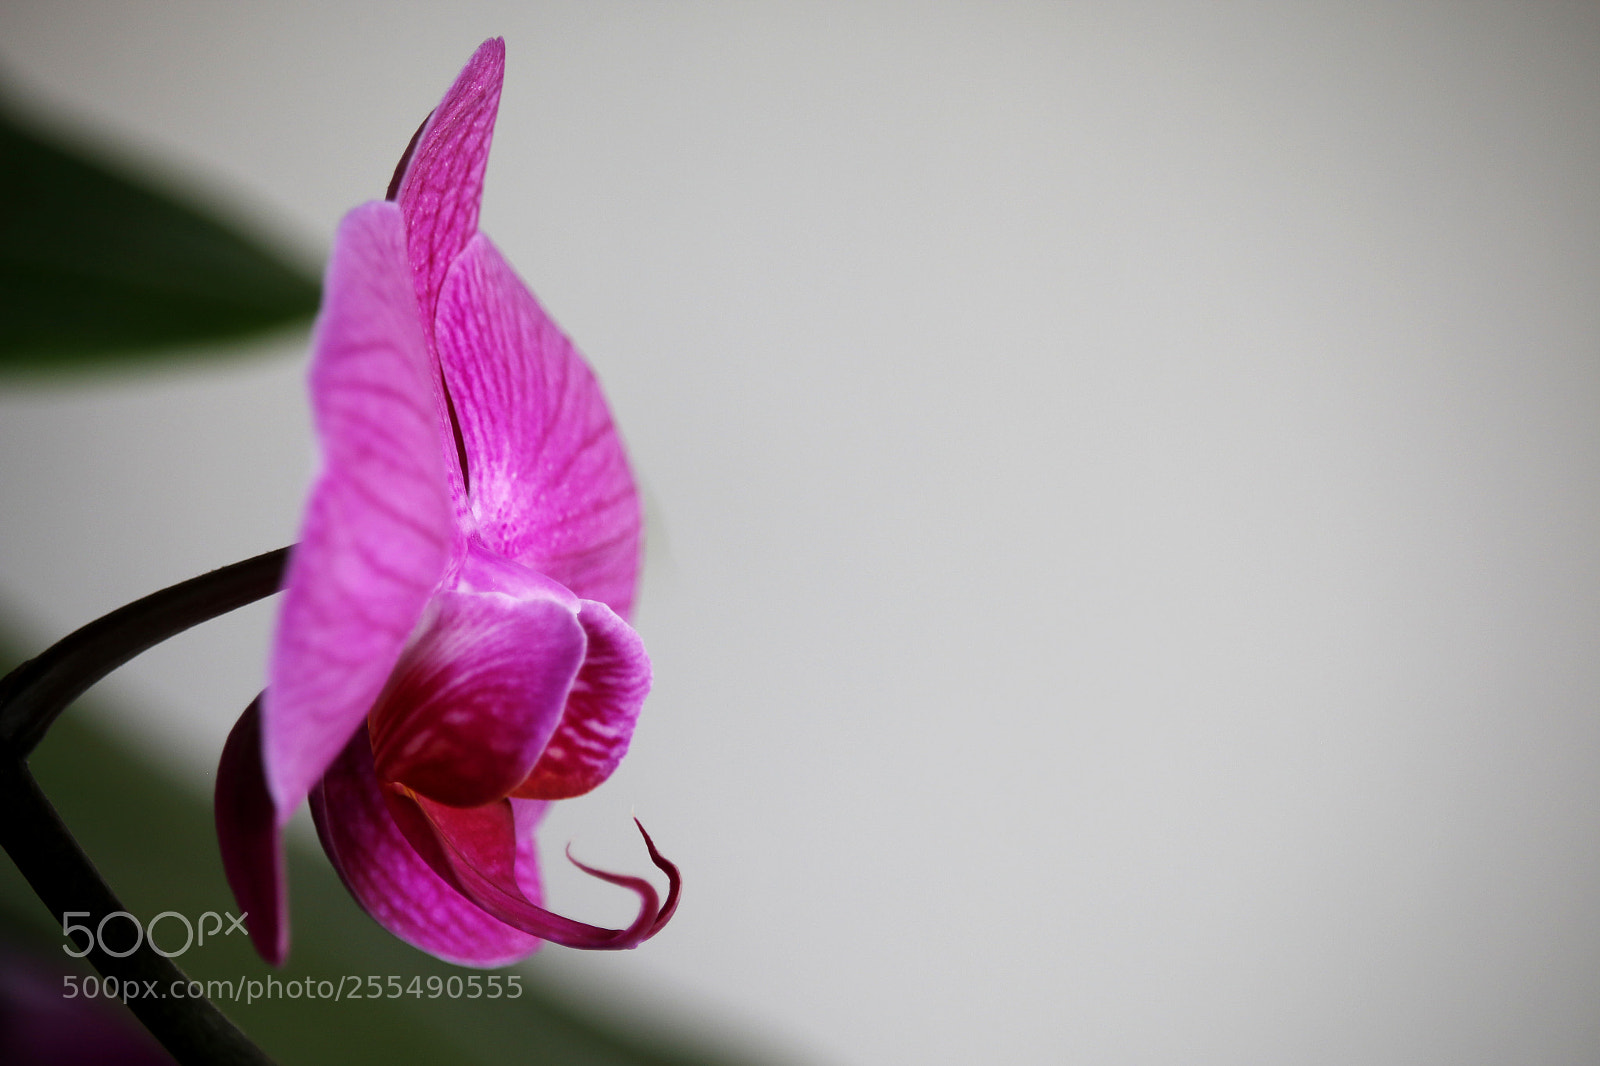 Canon EOS 70D sample photo. Orchidea photography